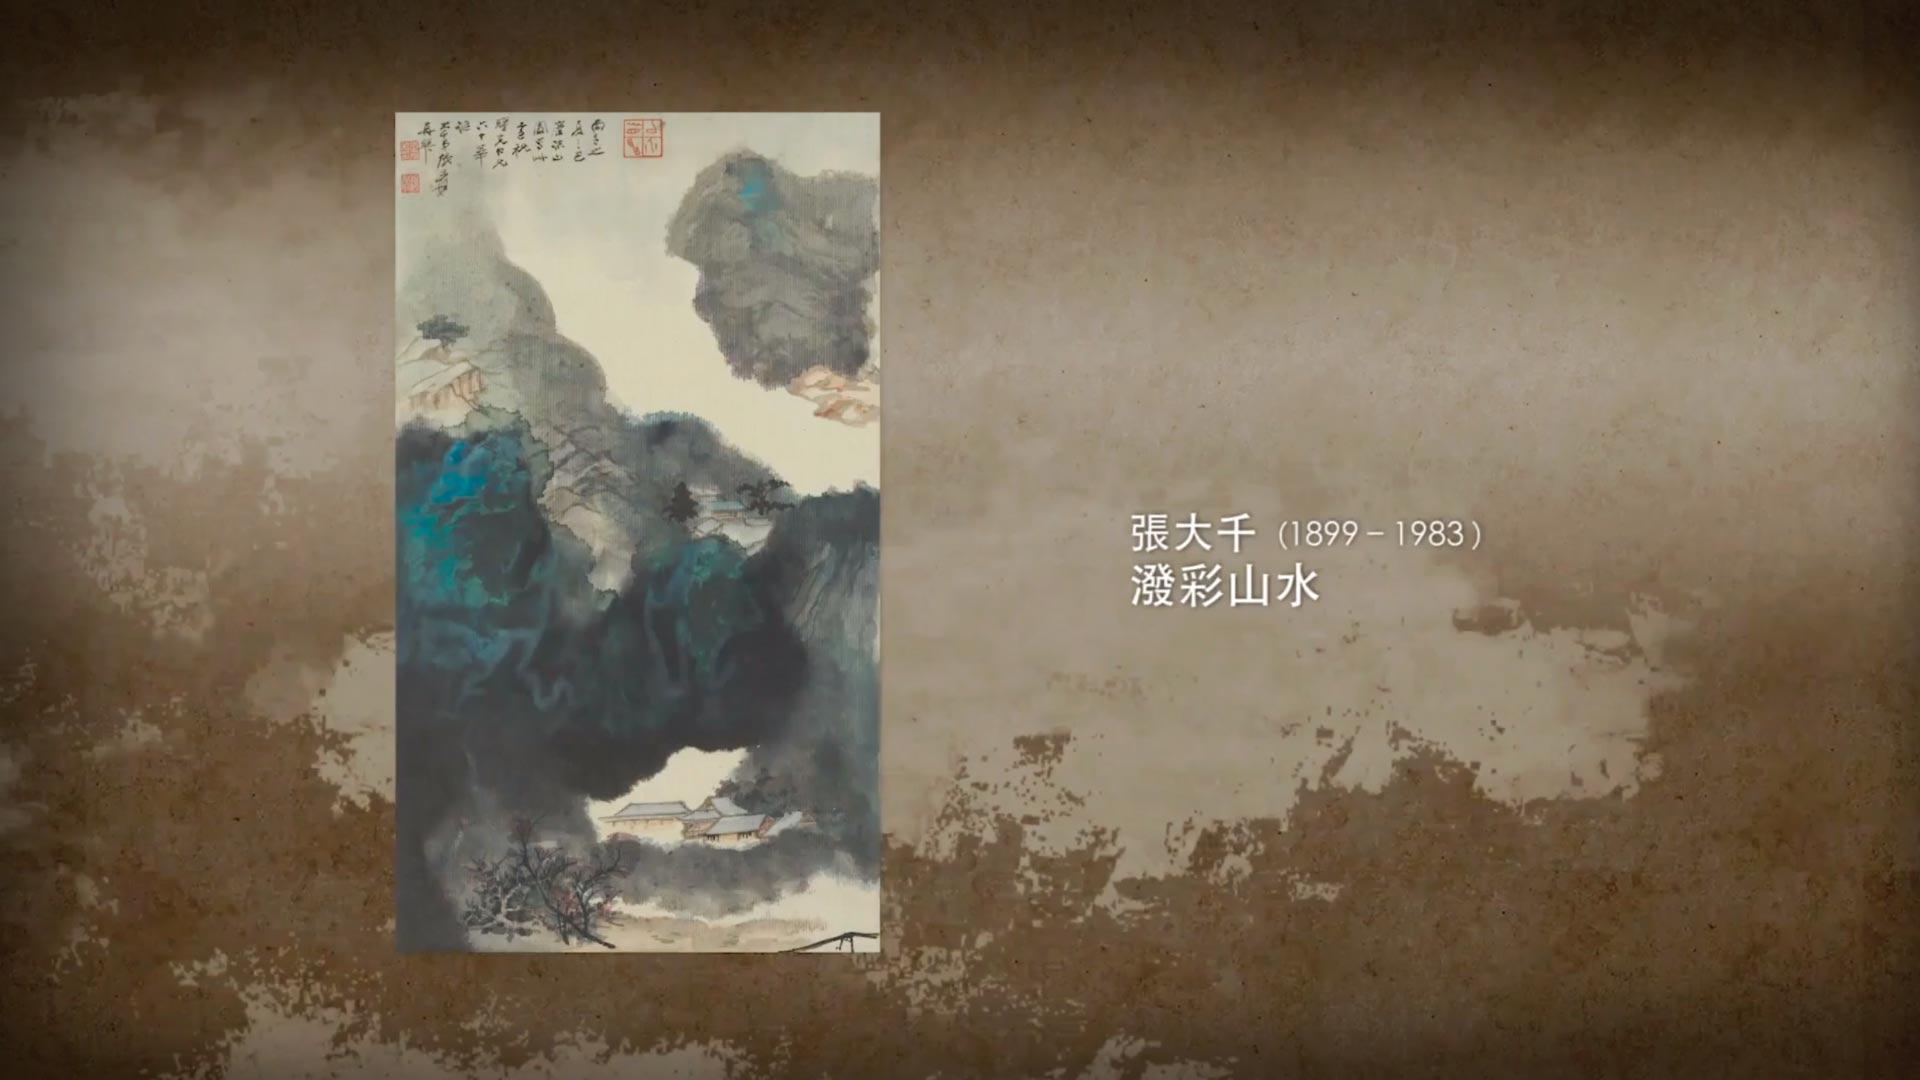 出处:《呼吸美学－中国古画赏析》- 看山不是山 (2021) <p>画作提供：香港艺术馆至乐楼藏</p>